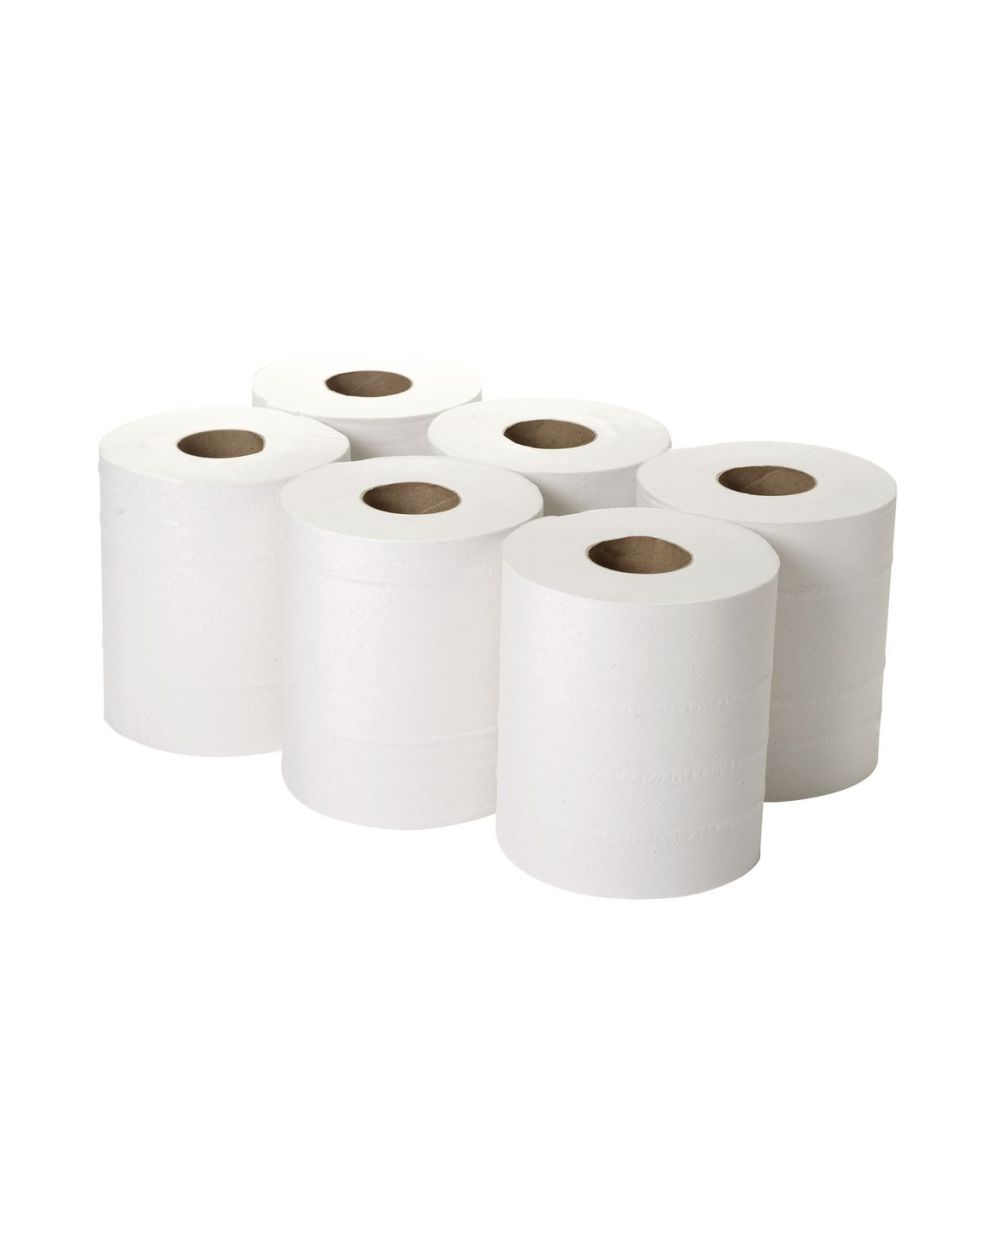 Рулон бумаги. Бумага в рулонах для производства салфеток. Упаковка рулонов бумаги. Салфетки в рулоне (бумага+пленка).